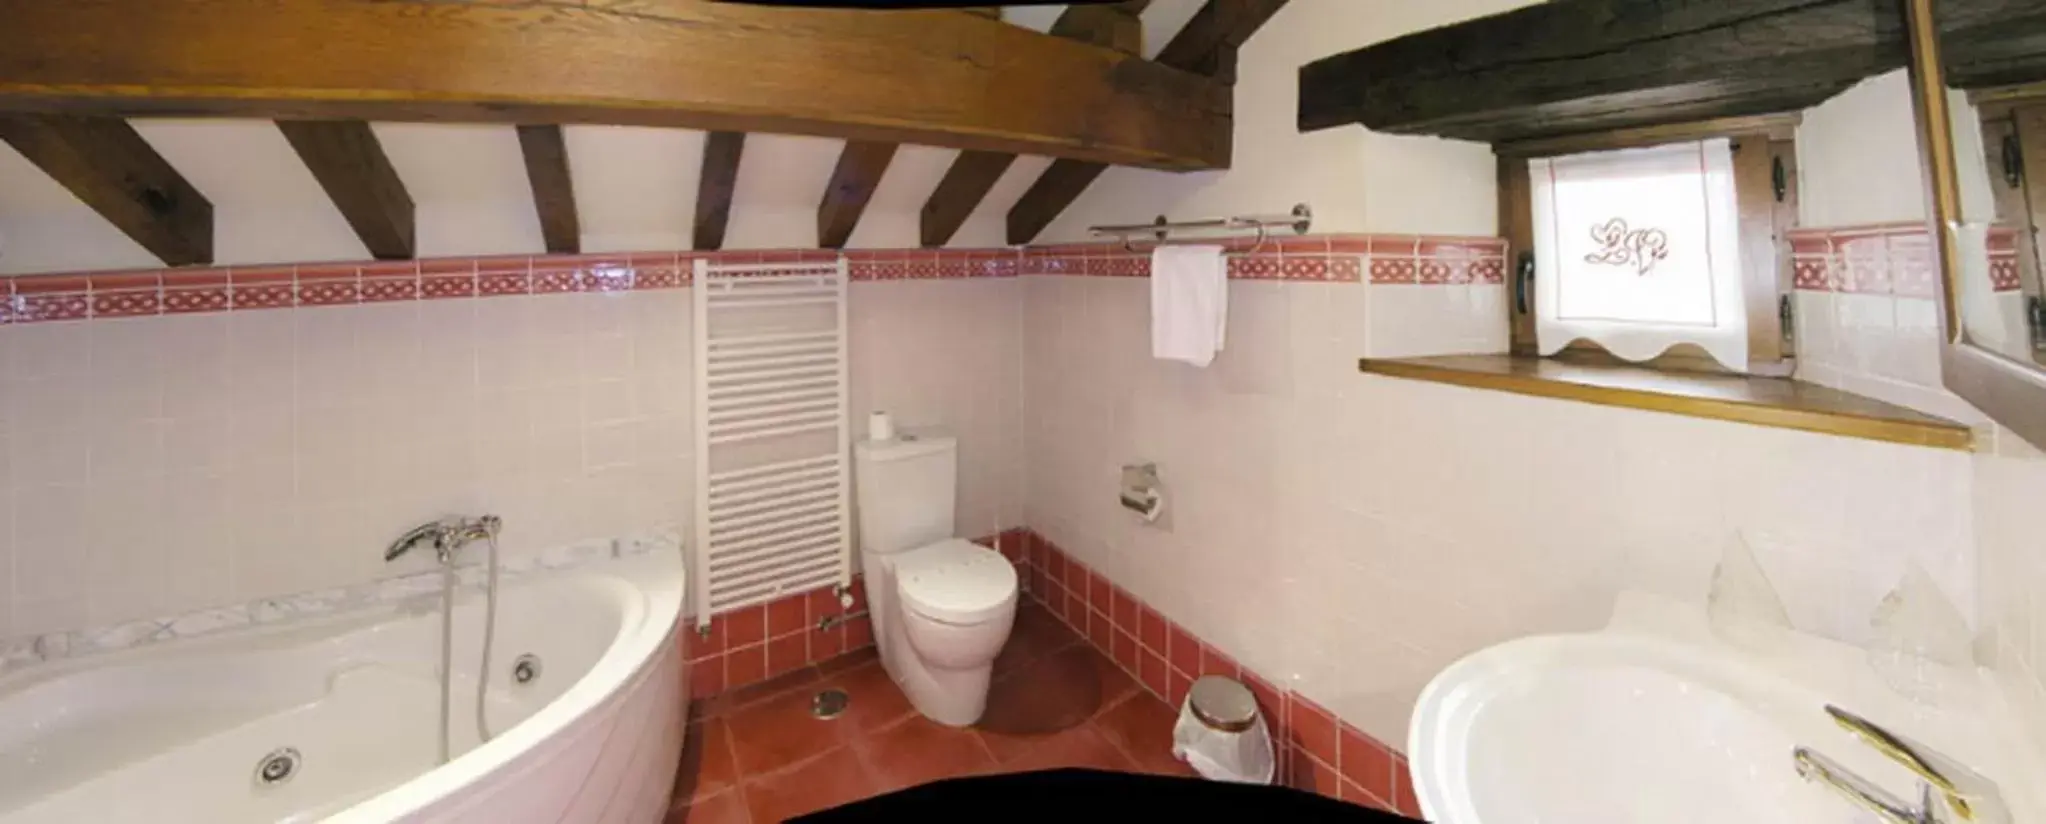 Bathroom in Posada La Victoria